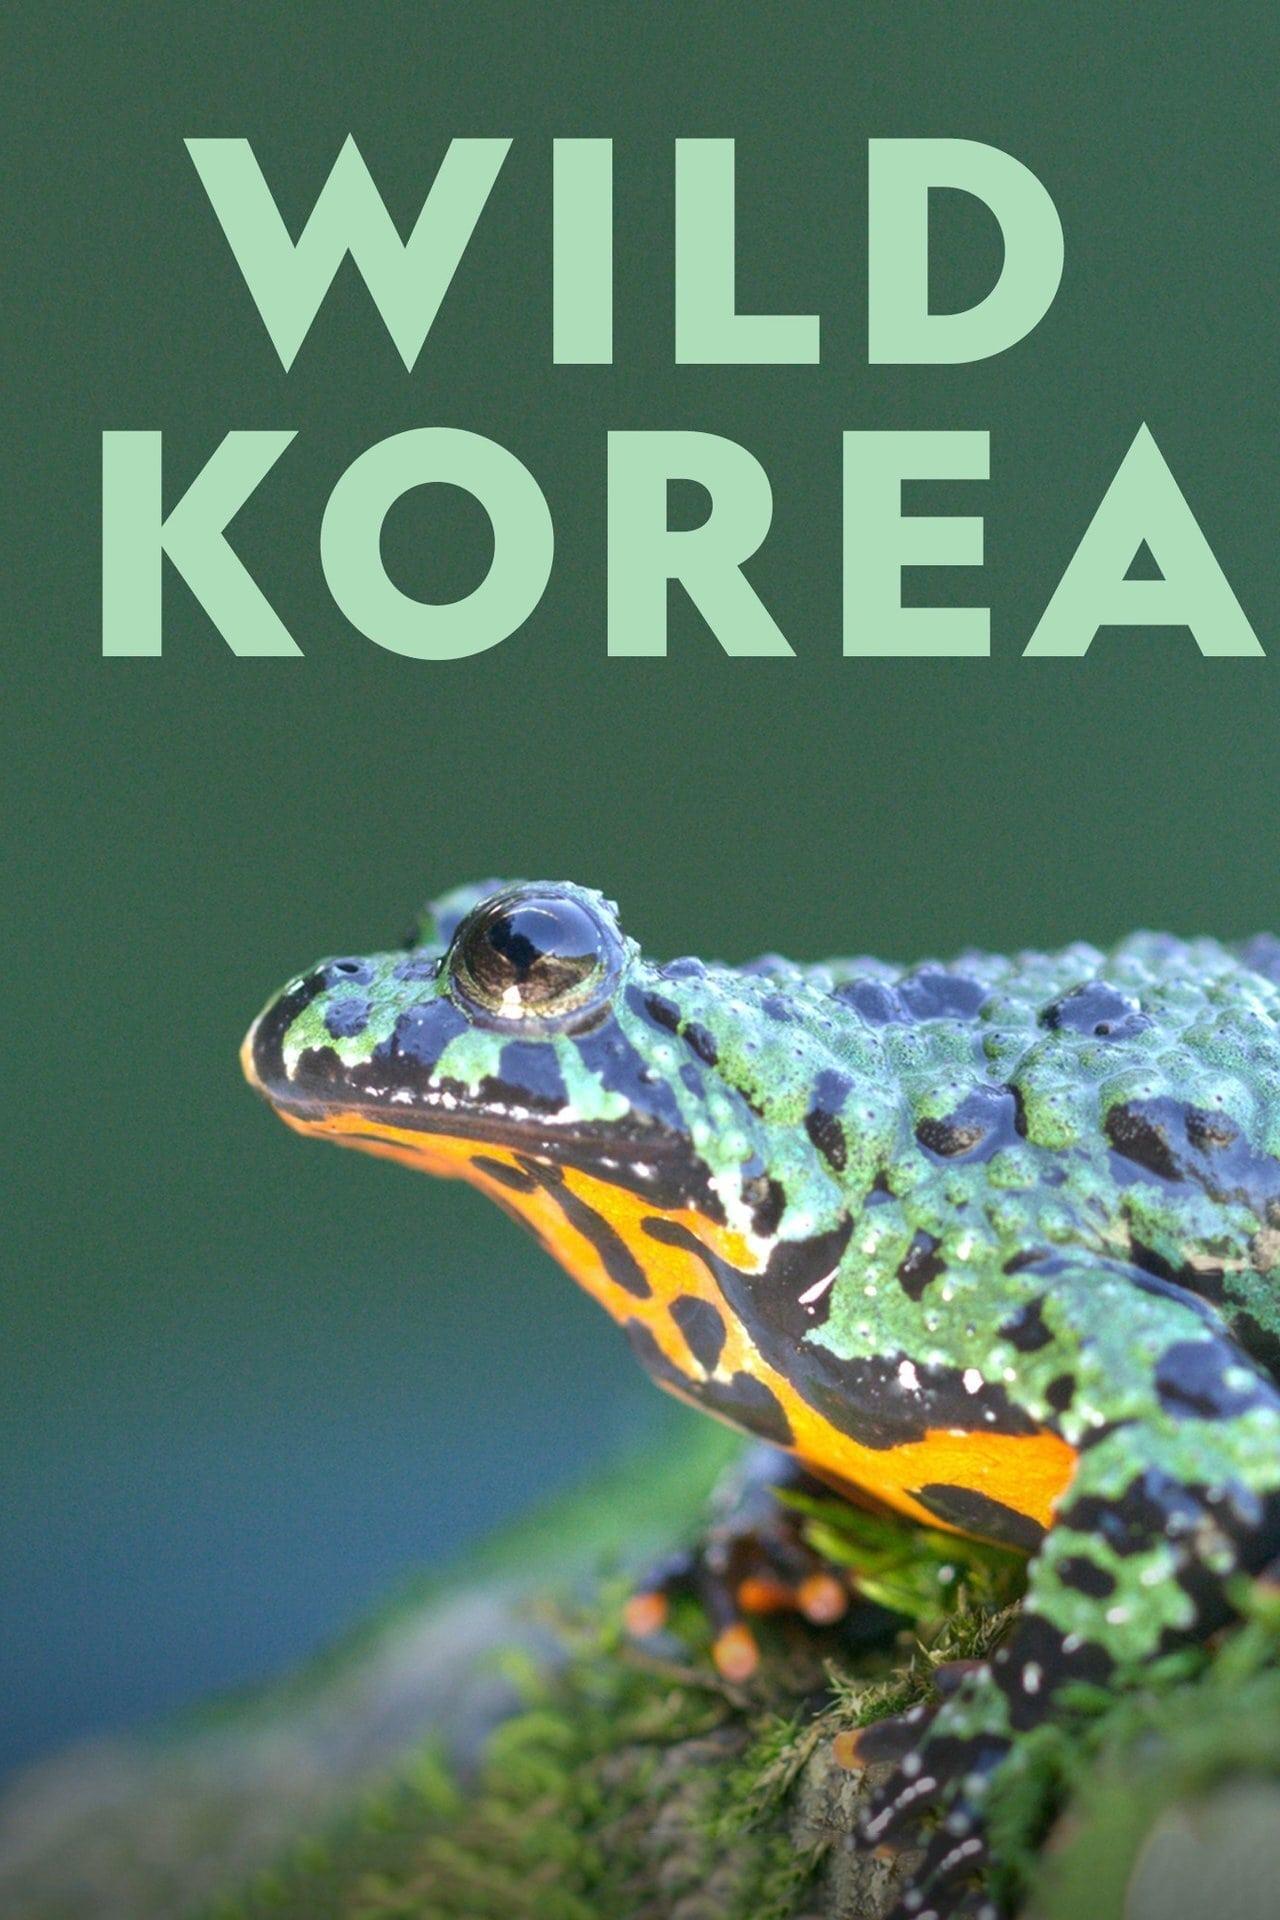 Wild Korea poster